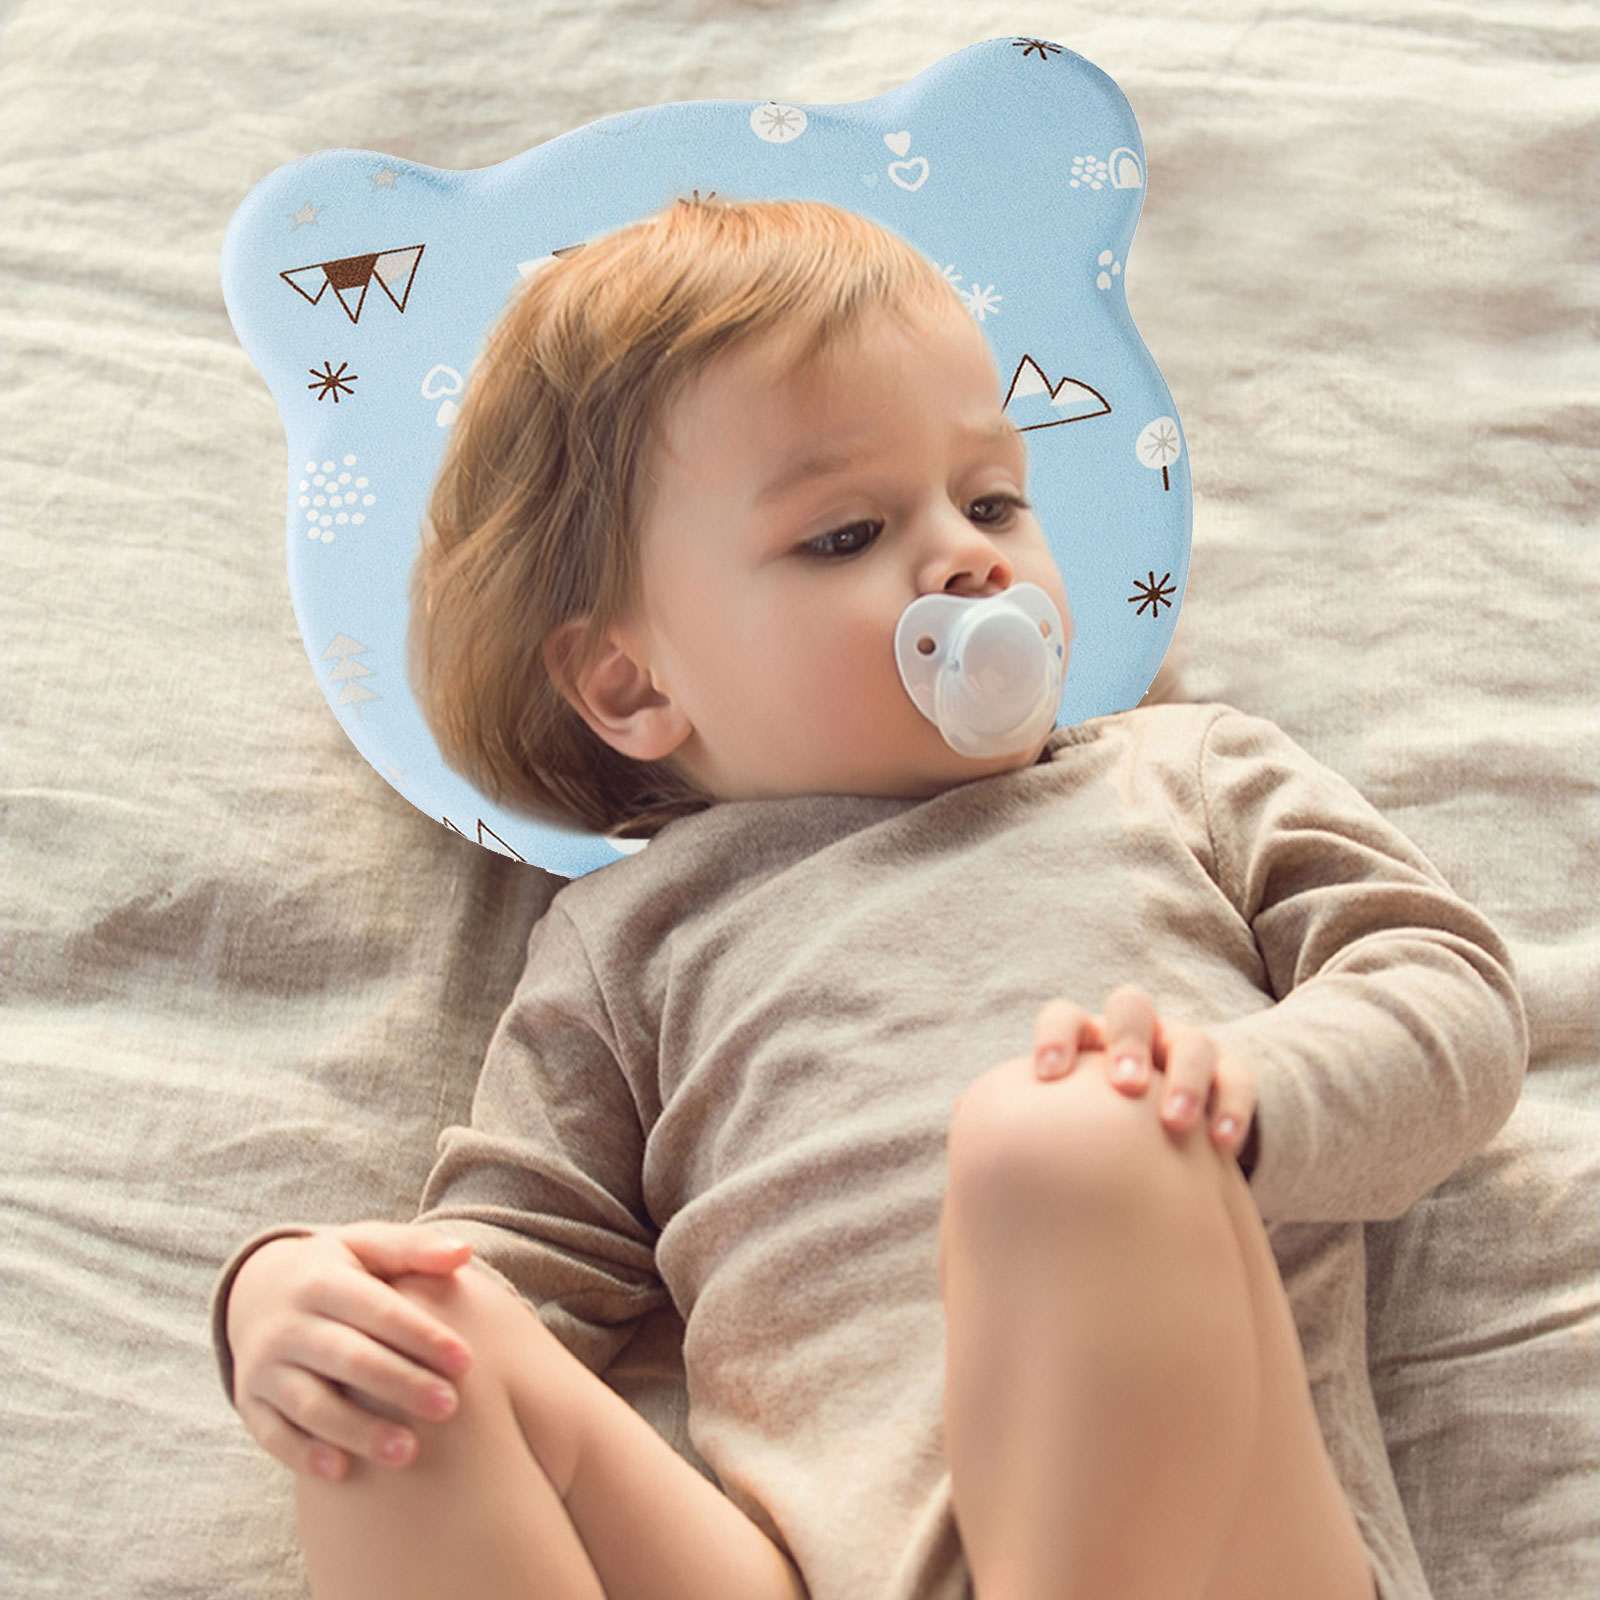 [Boguoxiong] หมอนทารก0-1ปีพนักพิงศีรษะทารกหน่วยความจำโฟมหมอนทารกไส้เทียนหมอนระบายอากาศ